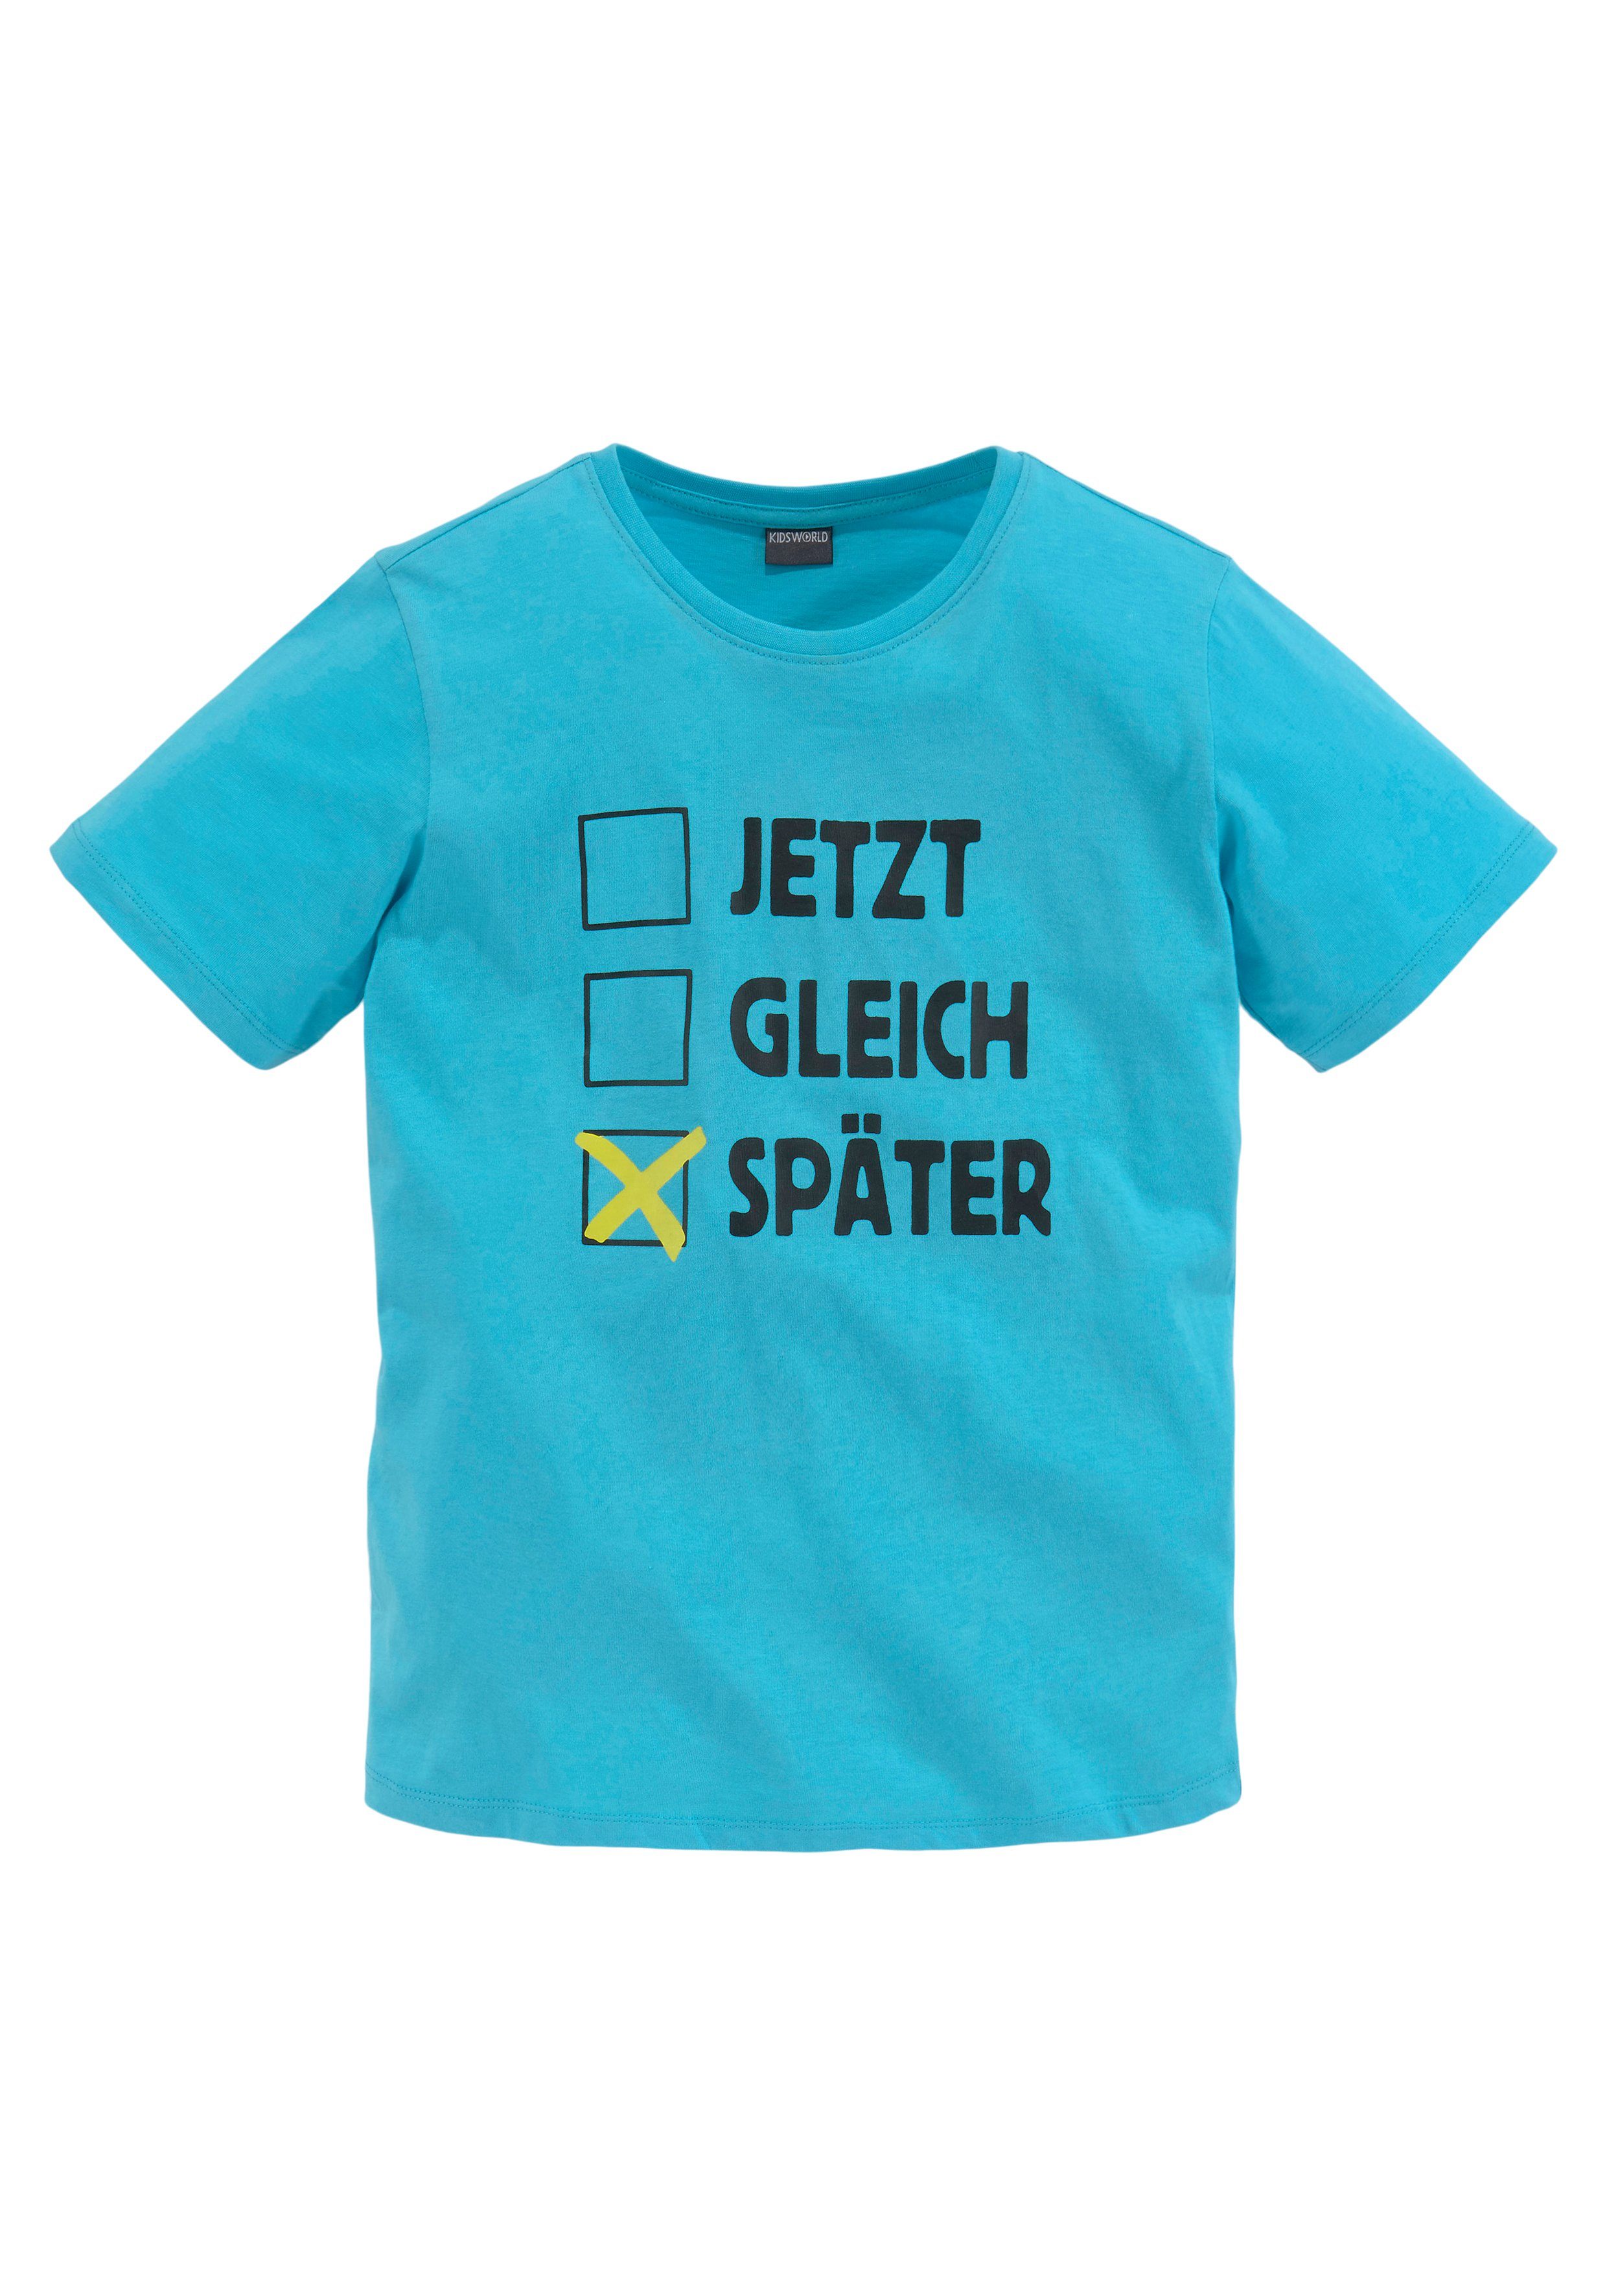 KIDSWORLD Spruch SPÄTER, T-Shirt